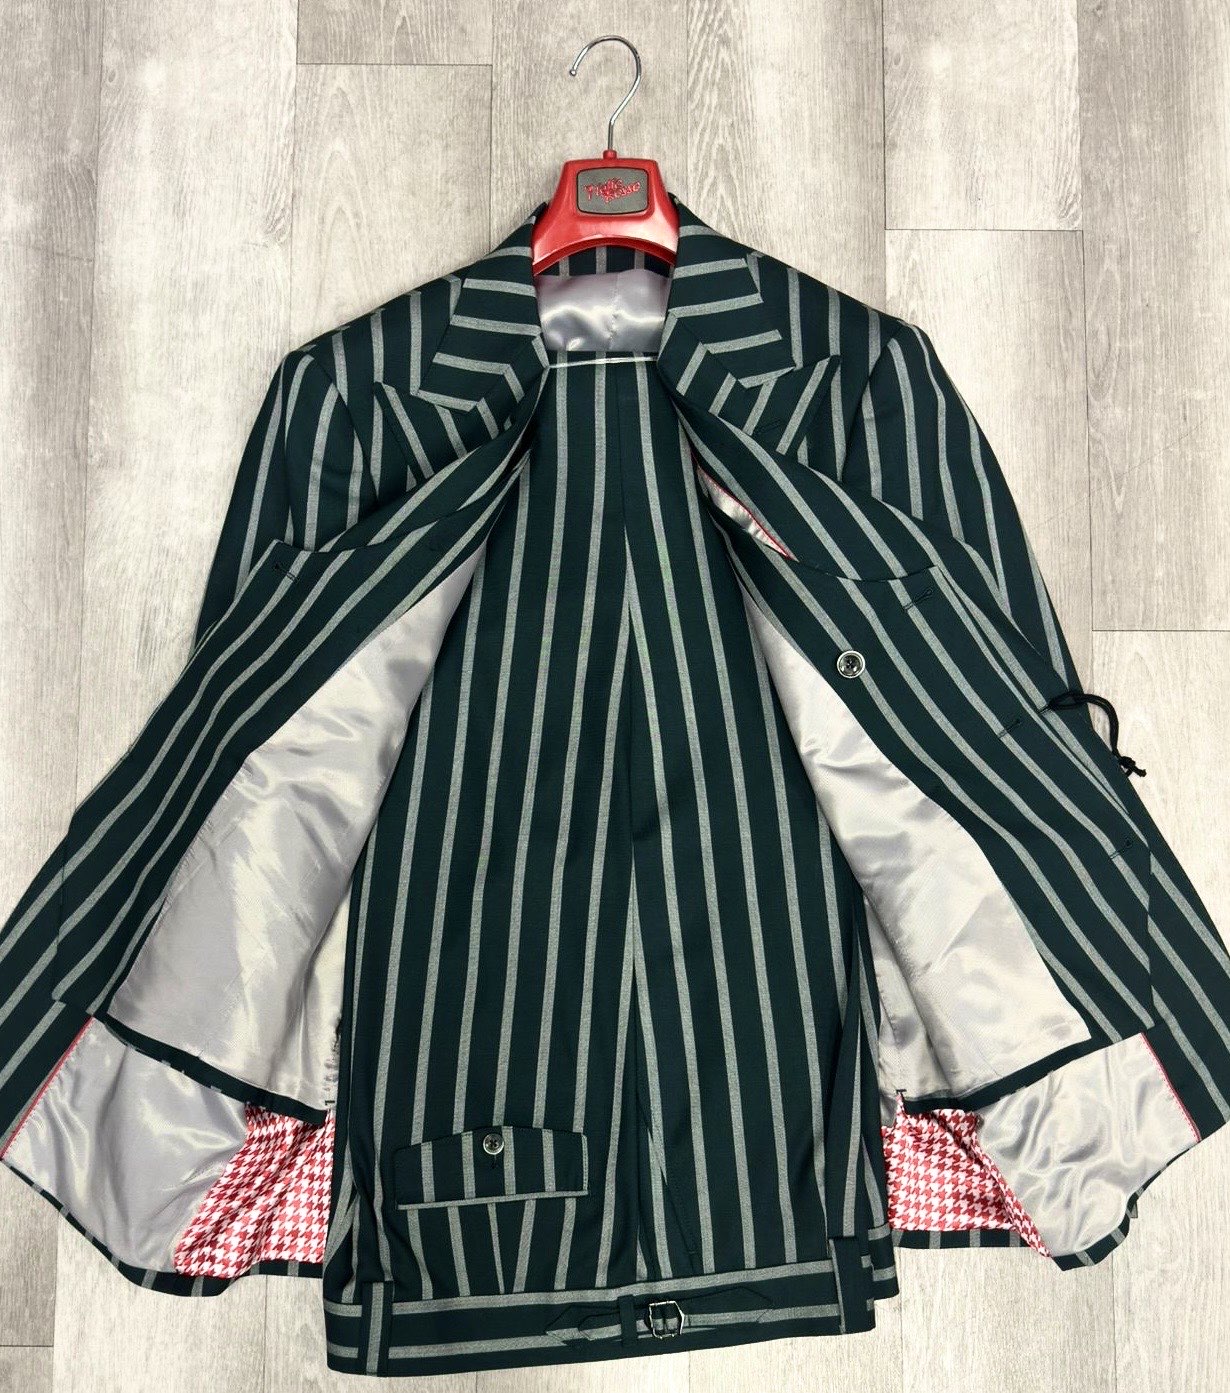 Tiglio Rosso Orvietto  Wool Suit/Vest TL4123 Green Pinstripe